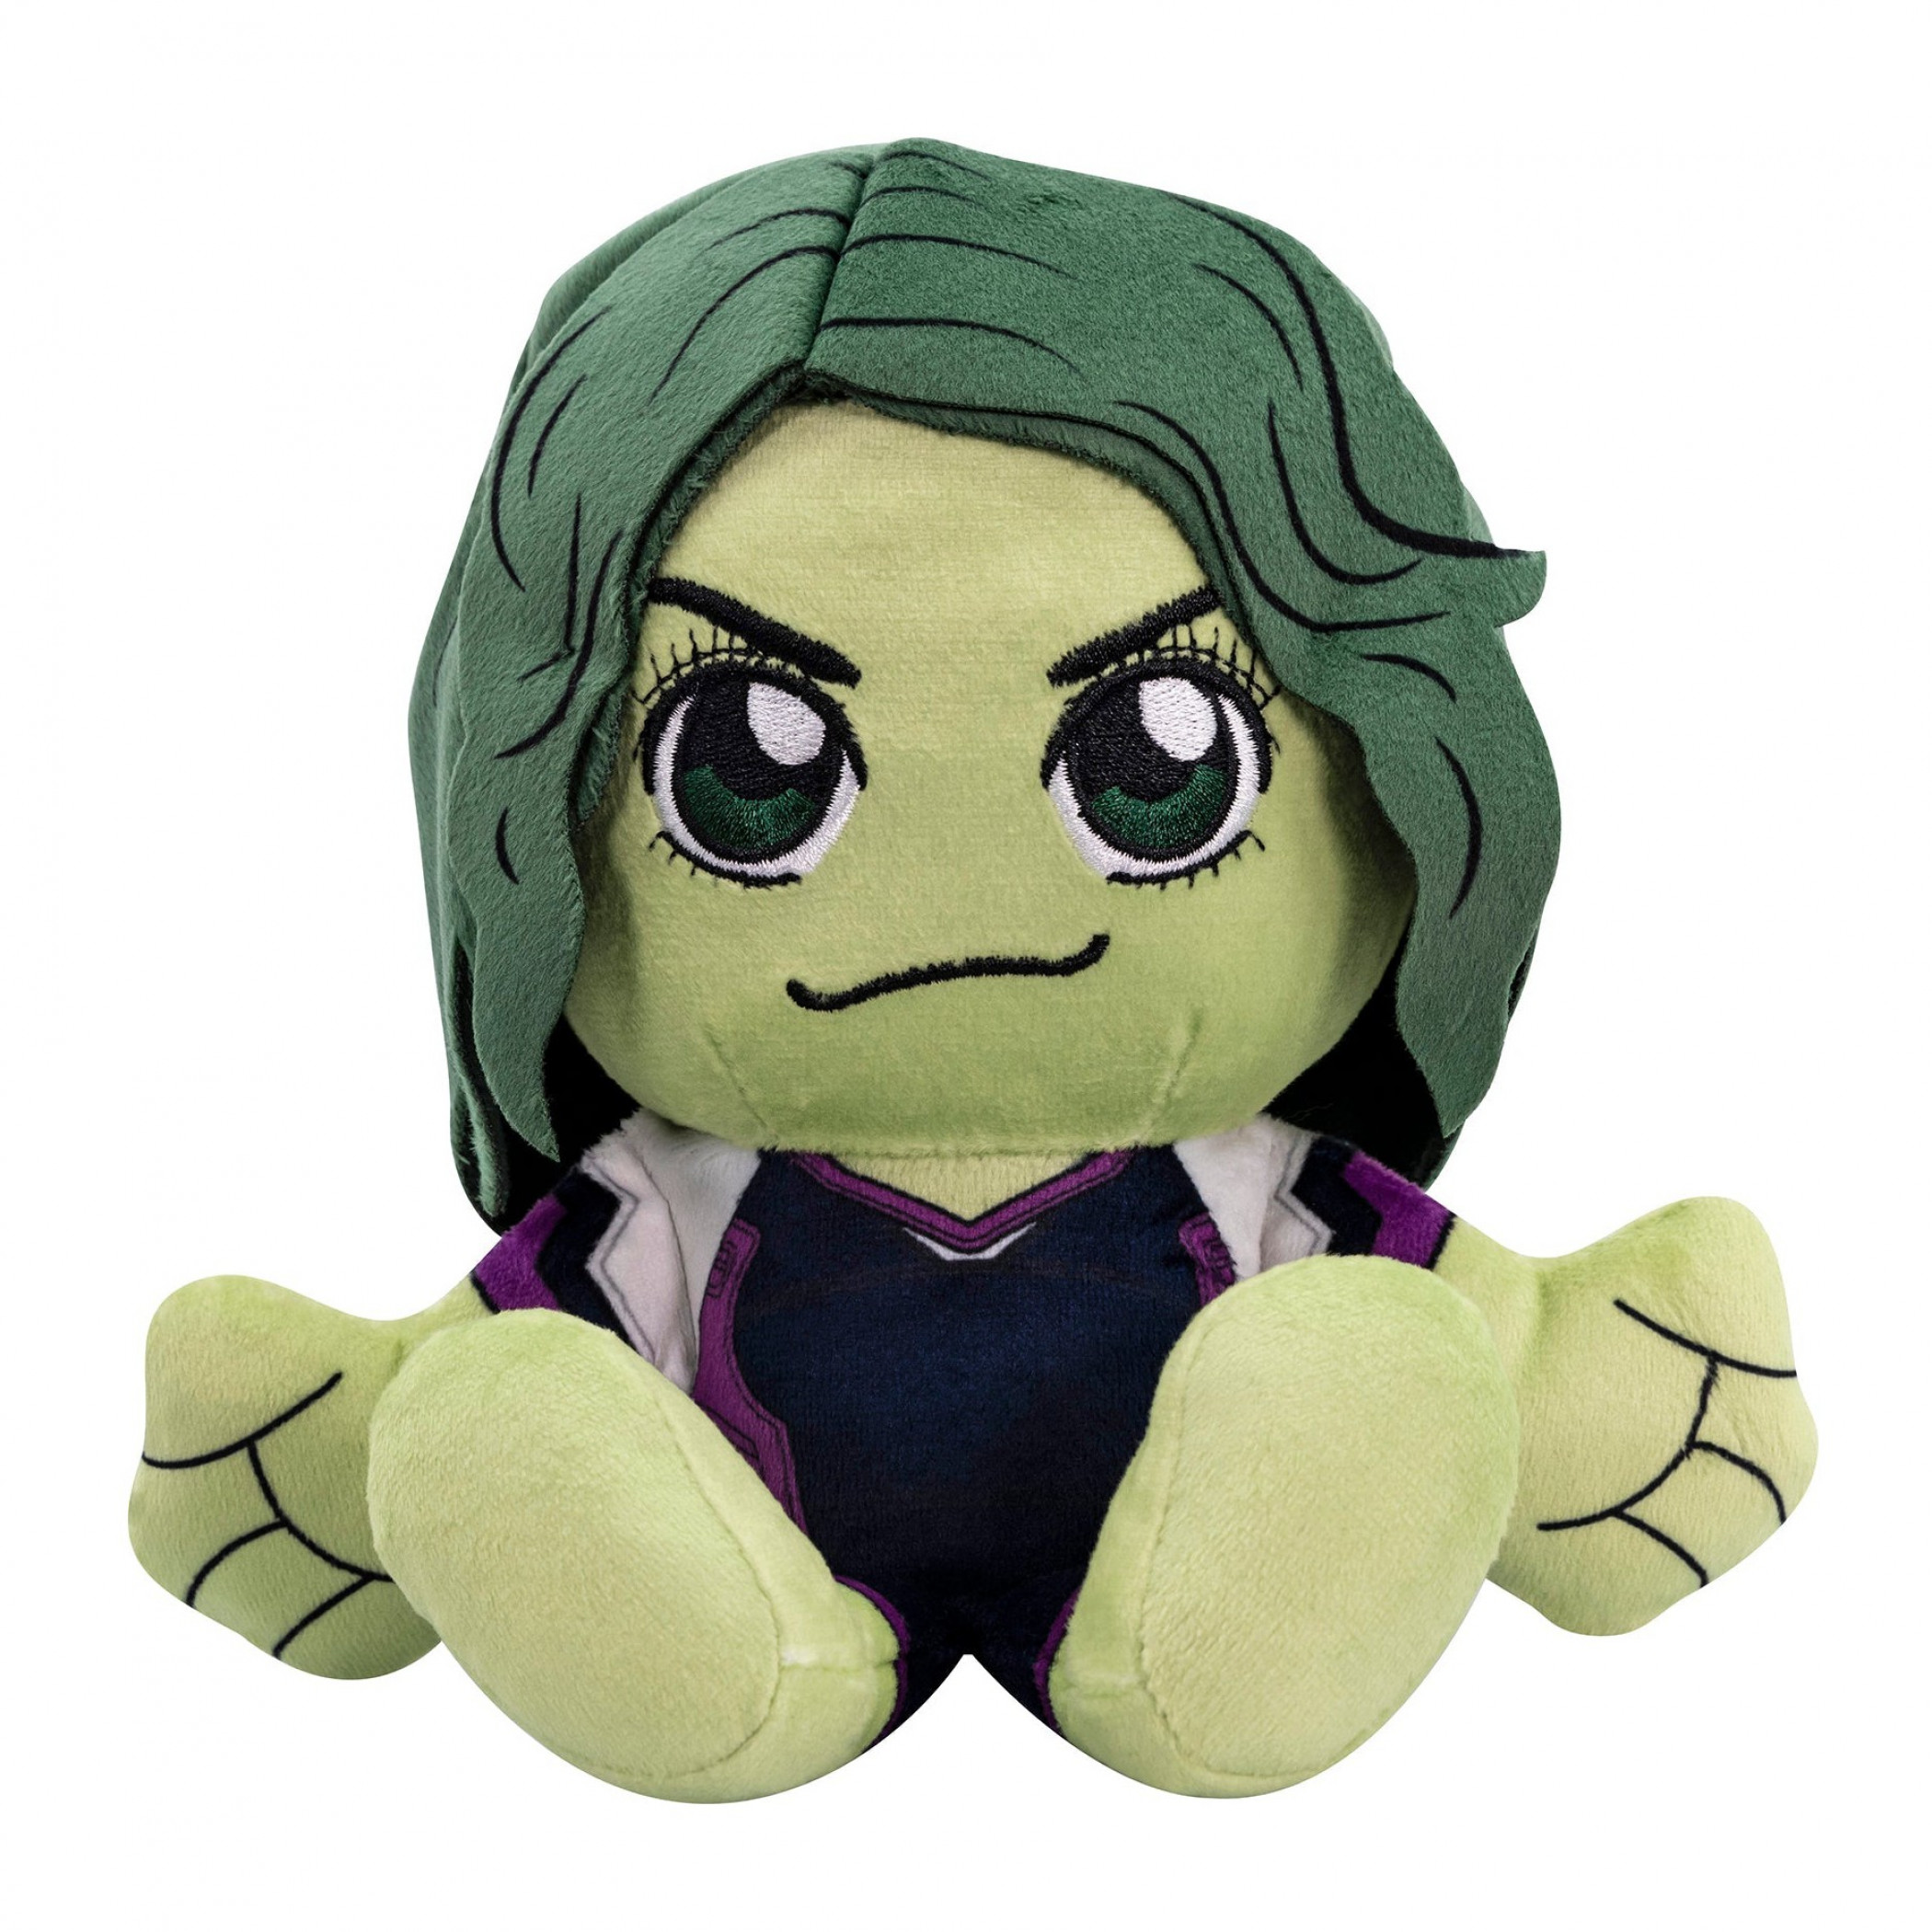 She-Hulk 8" Kuricha Sitting Plush Doll